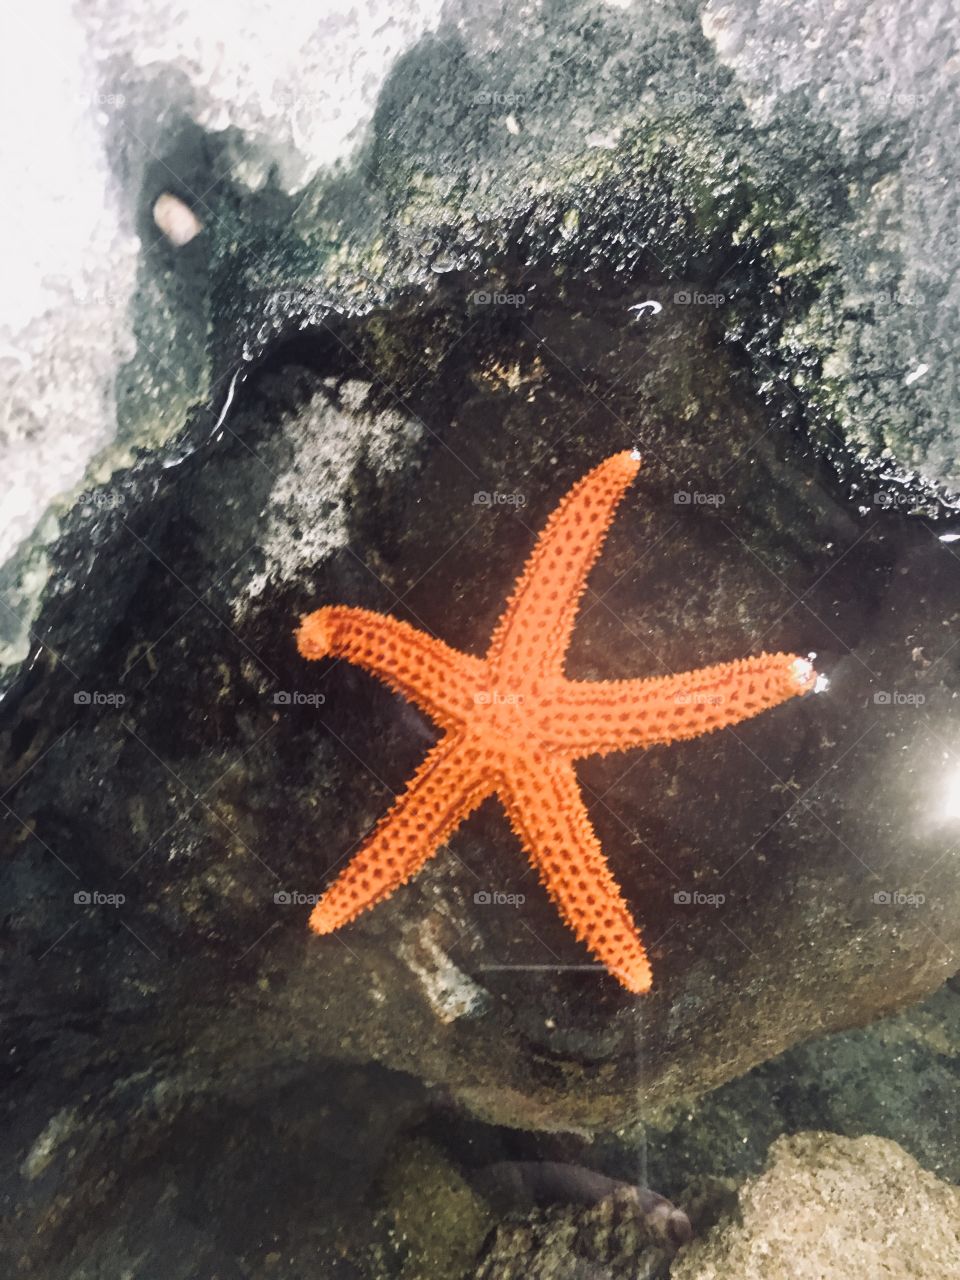 A linda estrela do mar fotografada no tanque do Aquário de Santos (Brazil)

